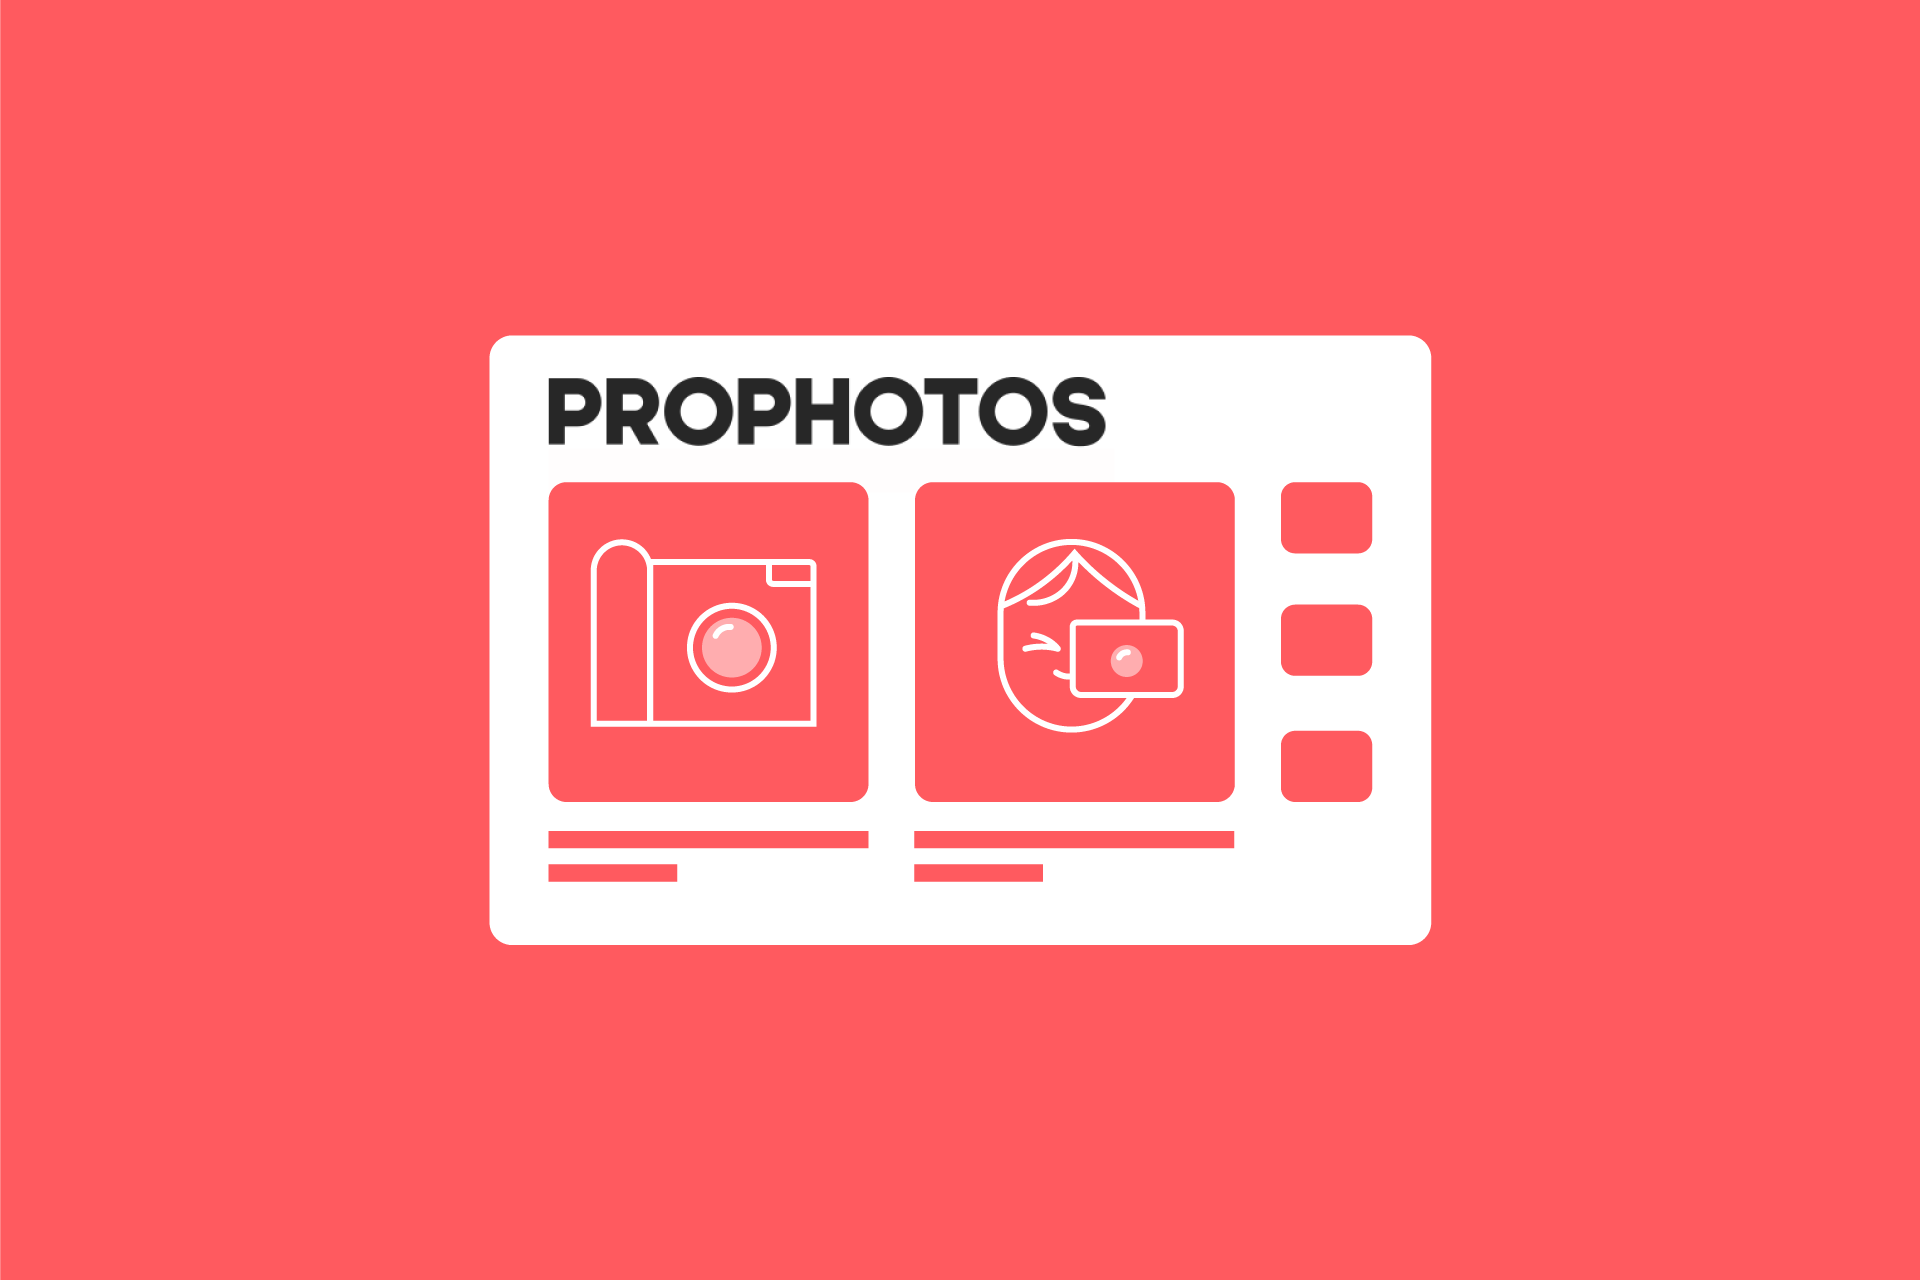 Prophotos. PROPHOTOS журнал. Медиапортал. PROPHOTOS logo.